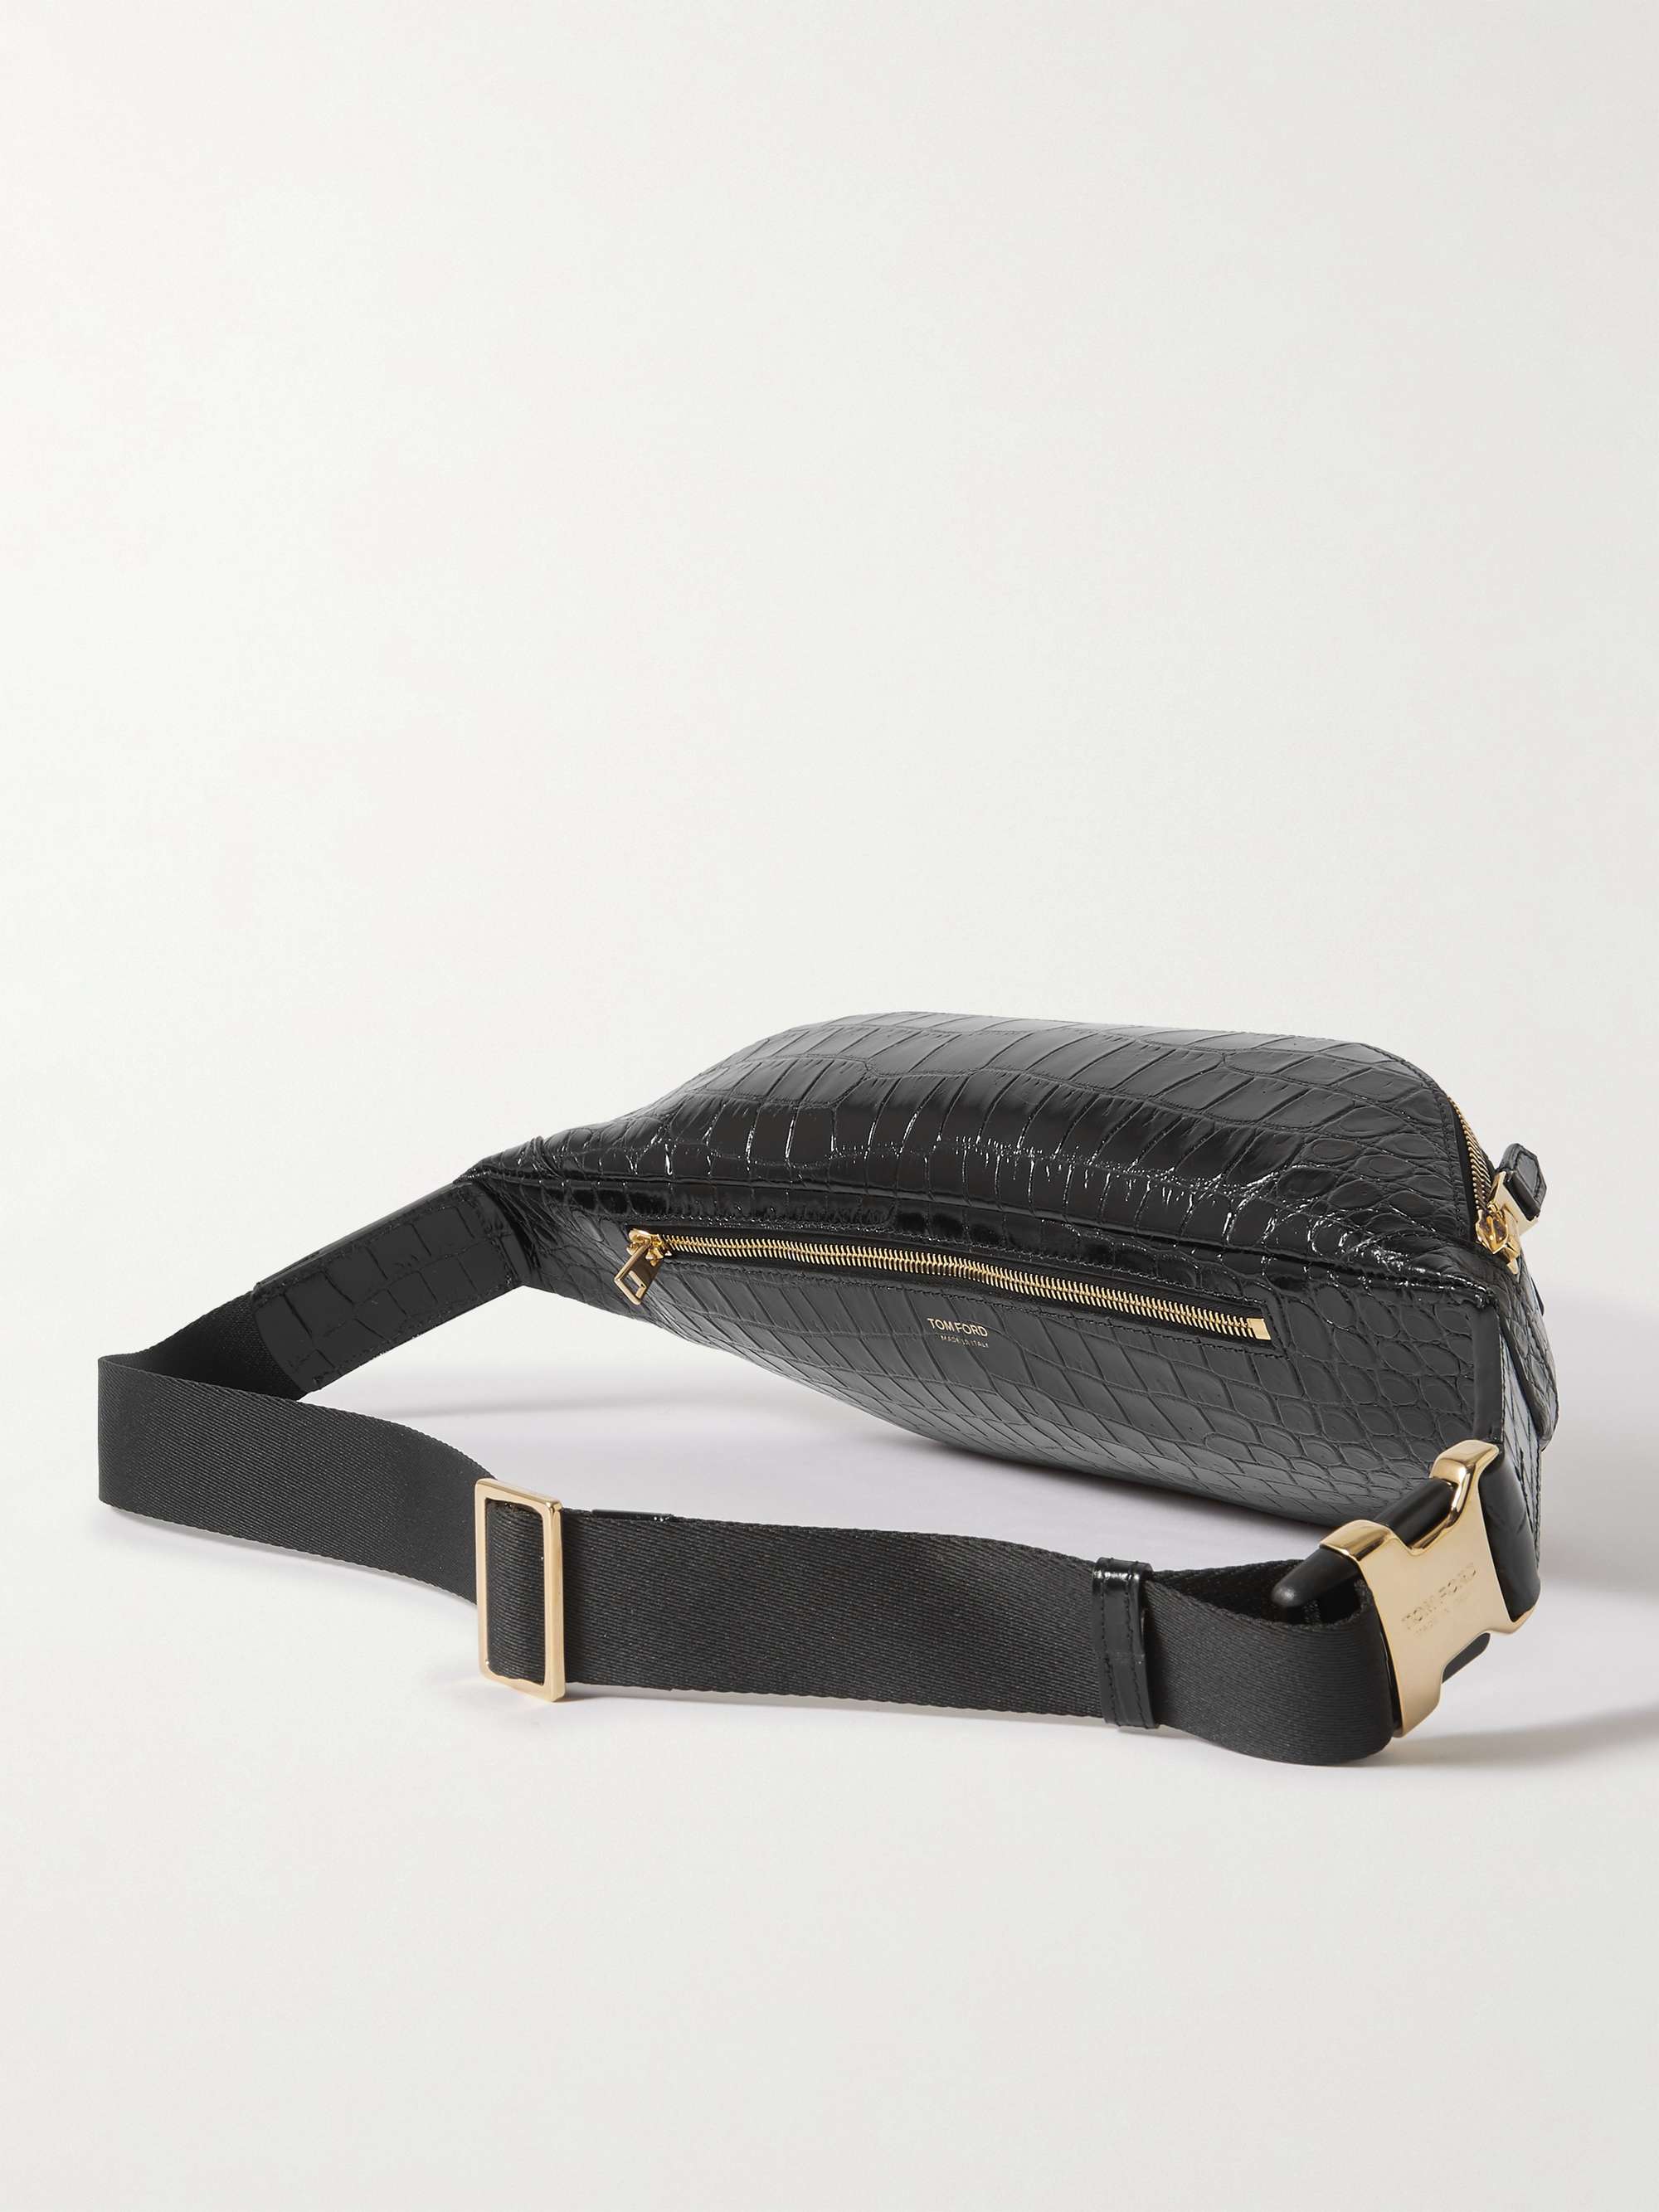 TOM FORD Buckley Croc-Effect Leather Belt Bag